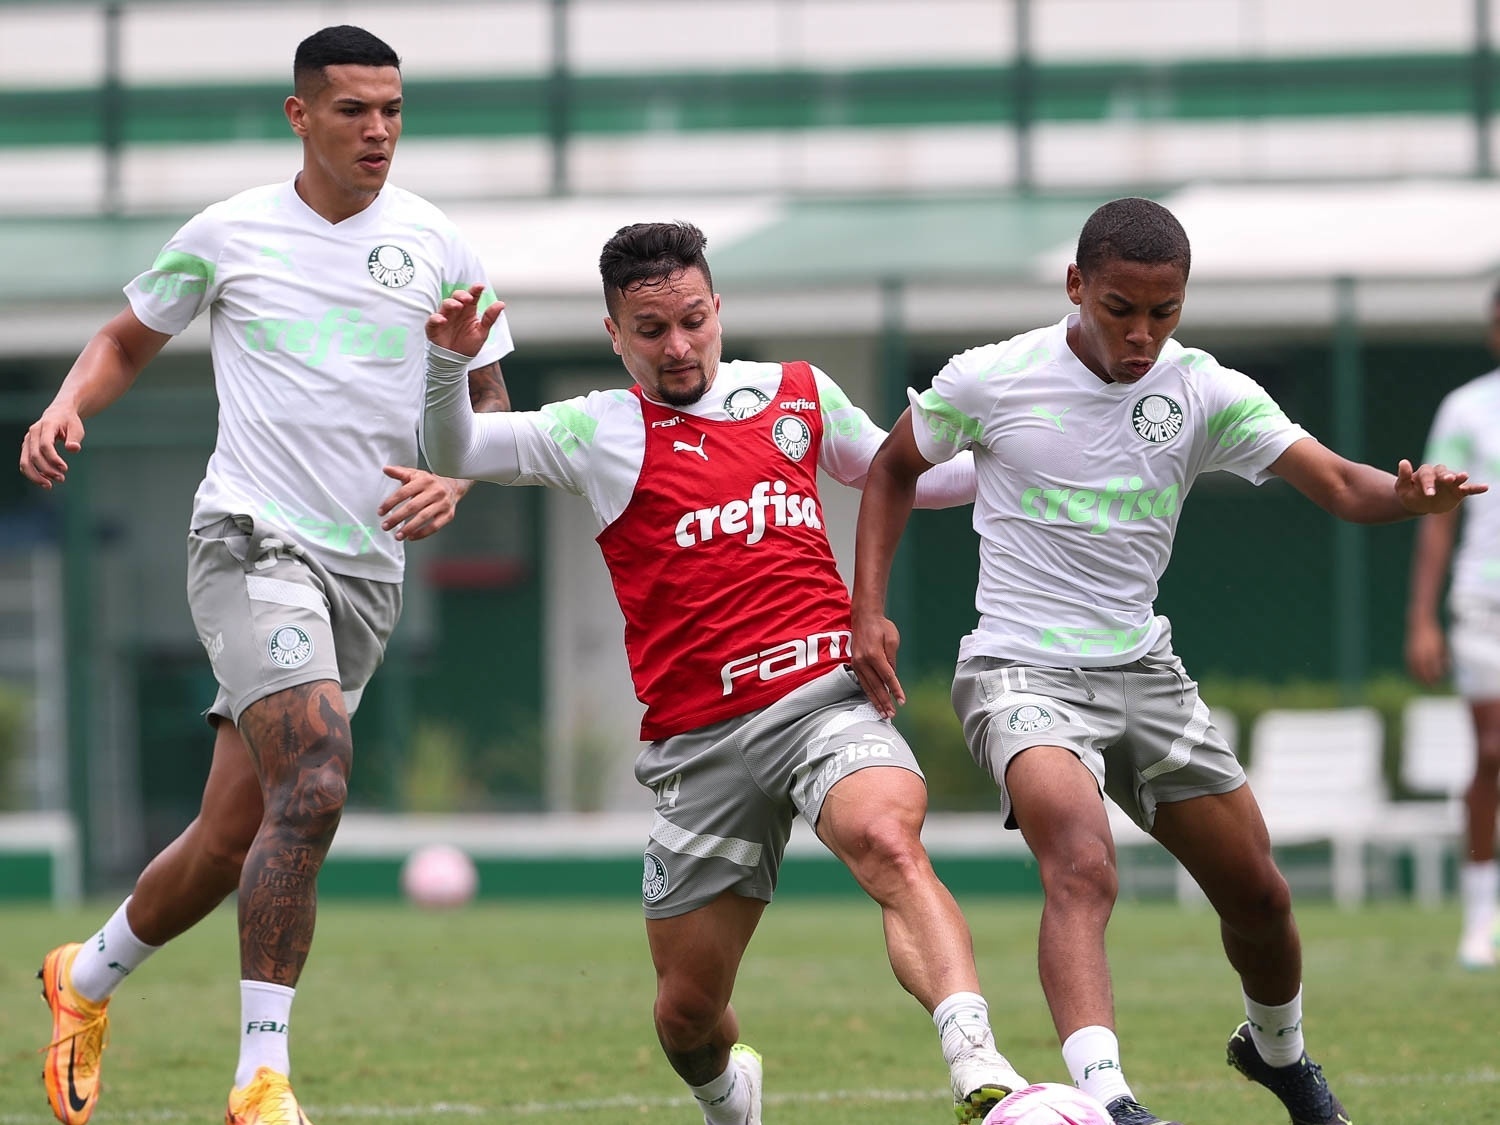 Palmeiras se reapresenta com treino técnico após classificação à